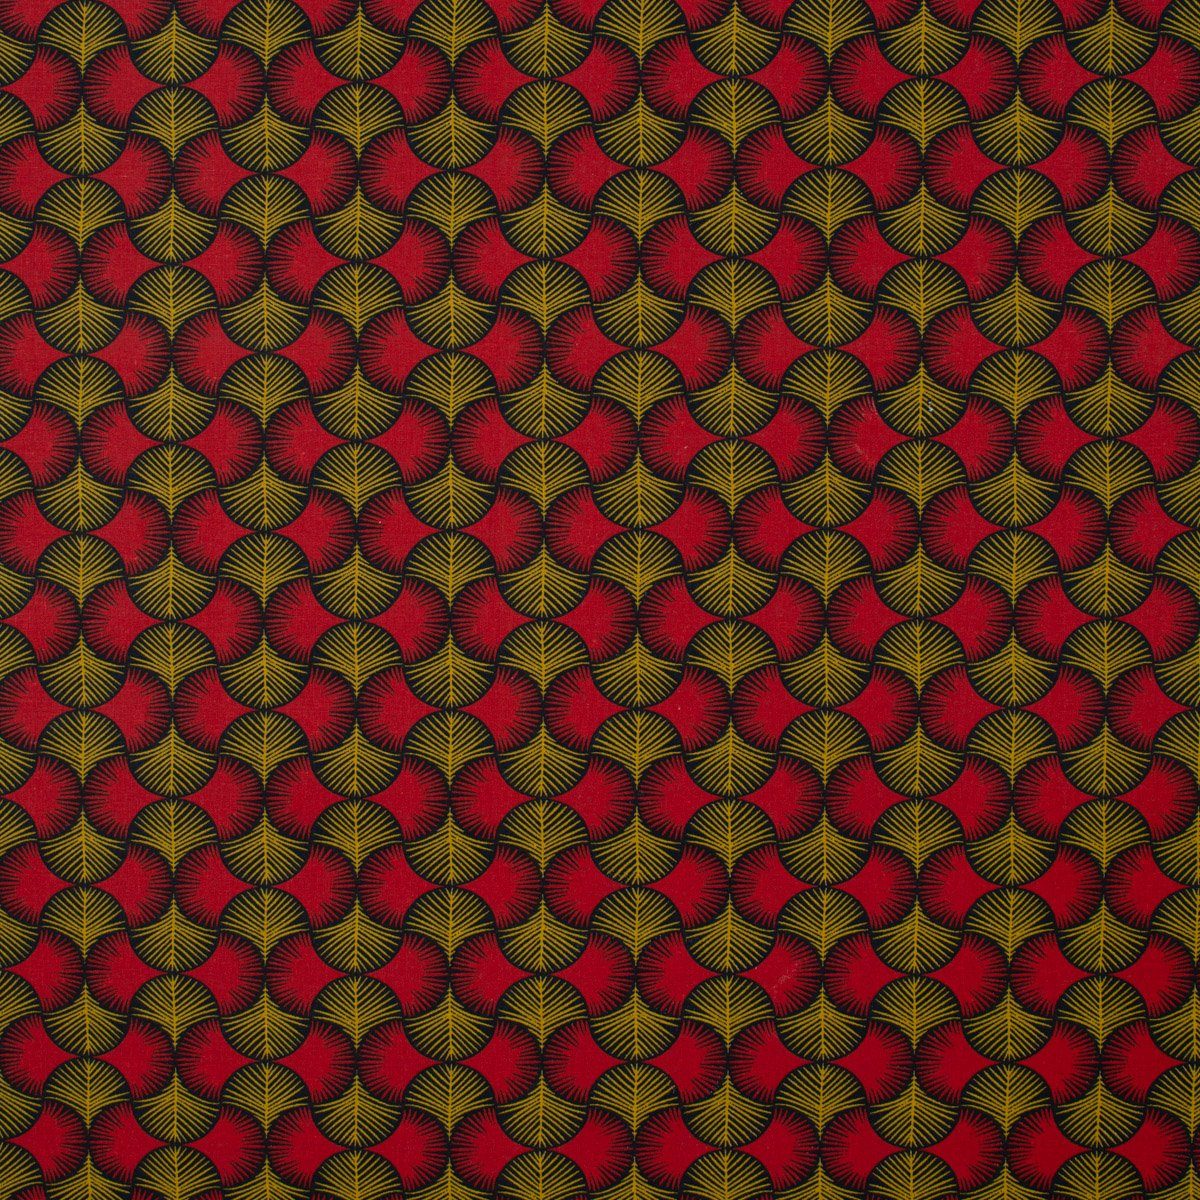 40x160cm, Tischläufer rot SCHÖNER LEBEN. LEBEN. Ginkgo handmade Blätter ocker schwarz Tischläufer SCHÖNER